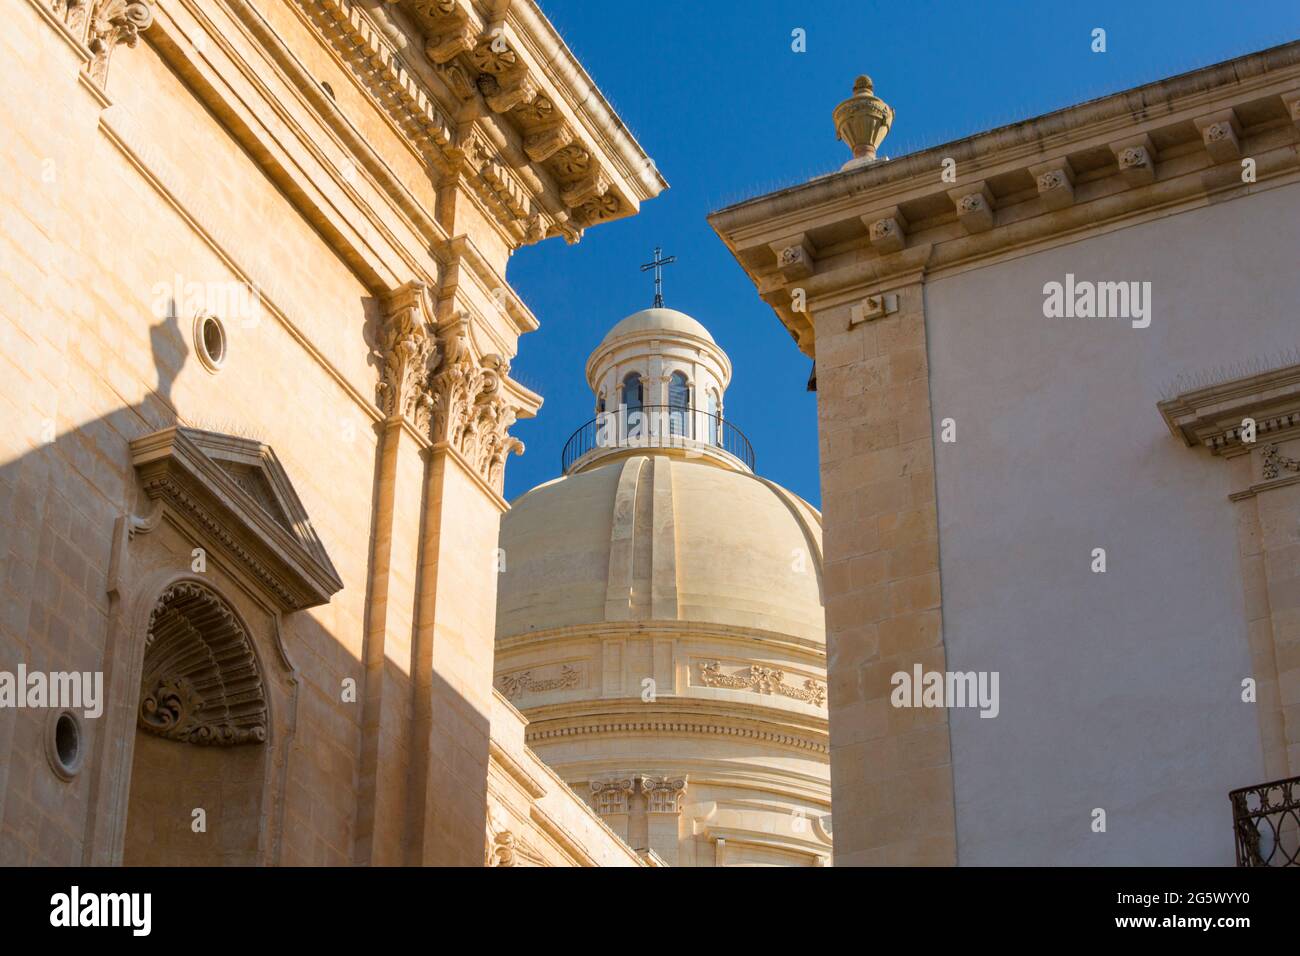 Noto, Syrakus, Sizilien, Italien. Niedriger Winkel durch enge Öffnung zur rekonstruierten Kuppel der barocken Kathedrale von San Nicolò. Stockfoto